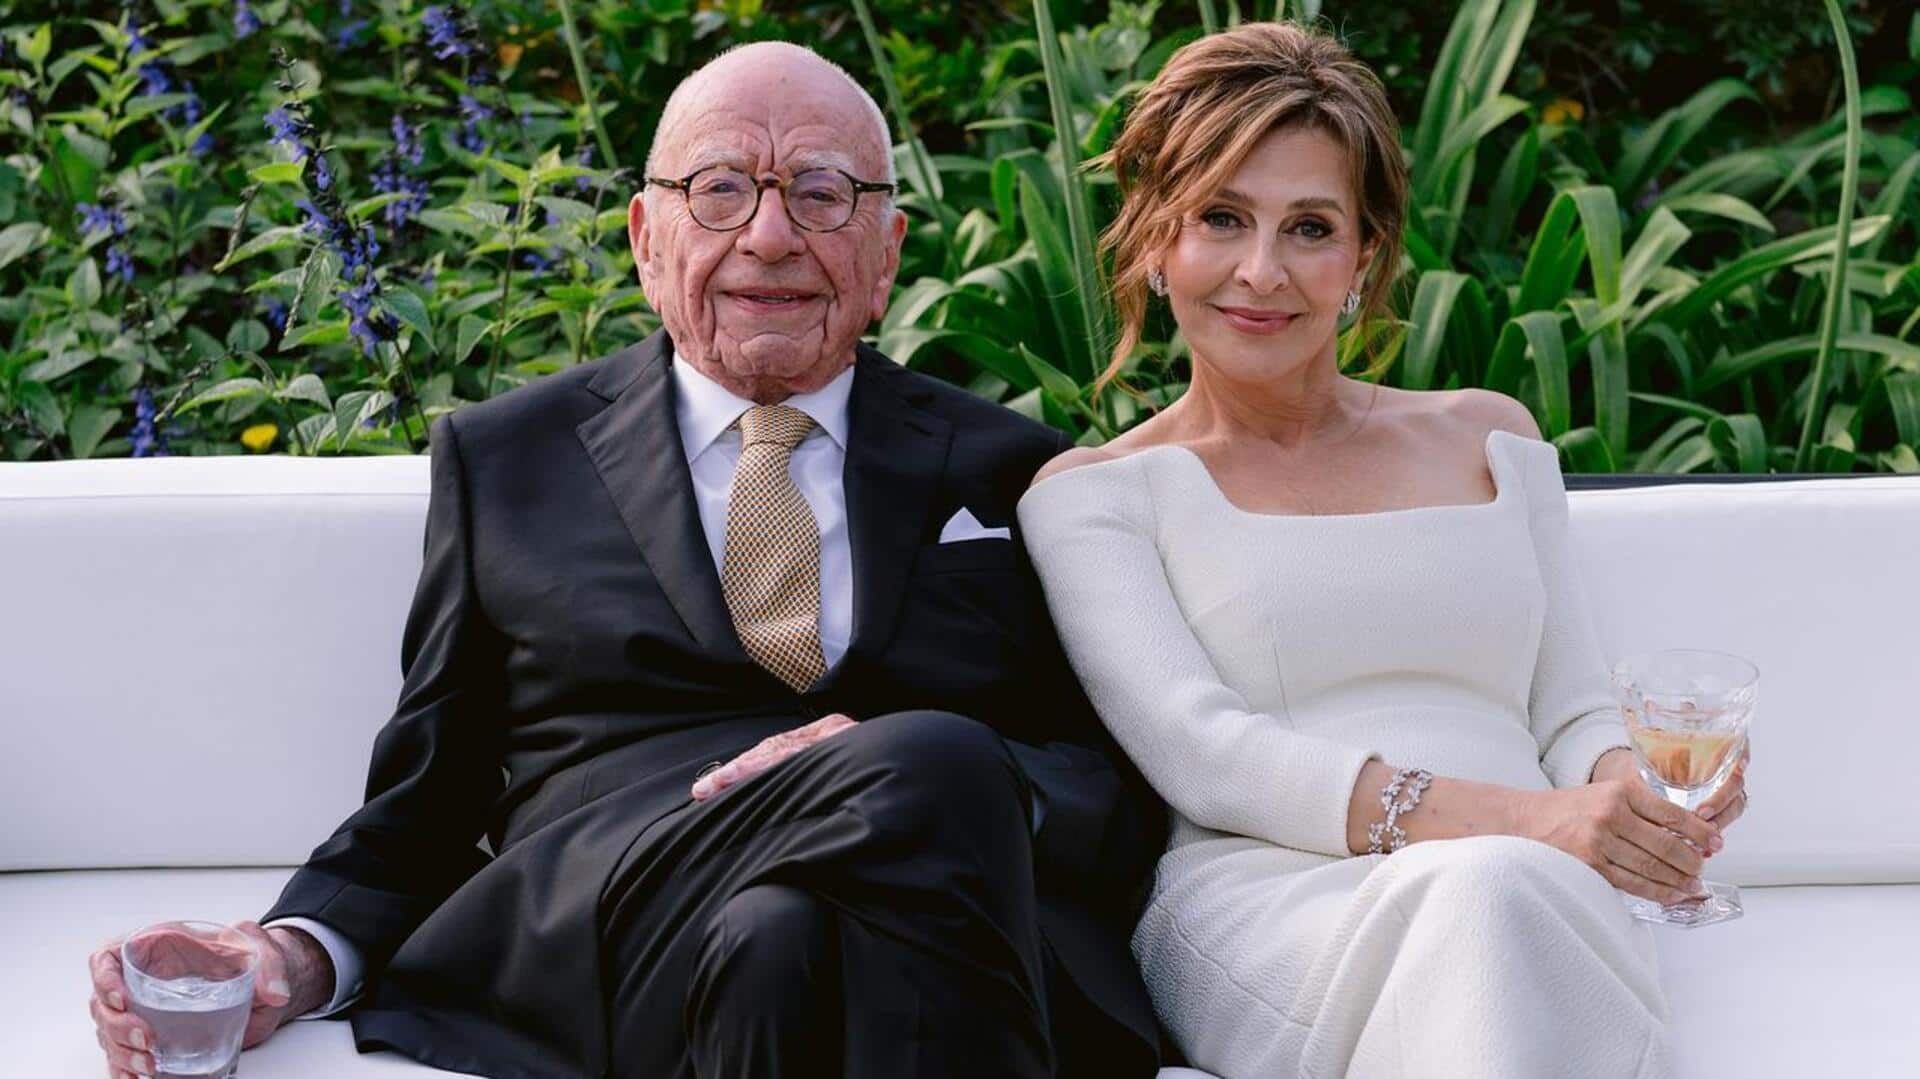 Rupert Murdoch (93) marries fifth time; weds Elena Zhukova (67)